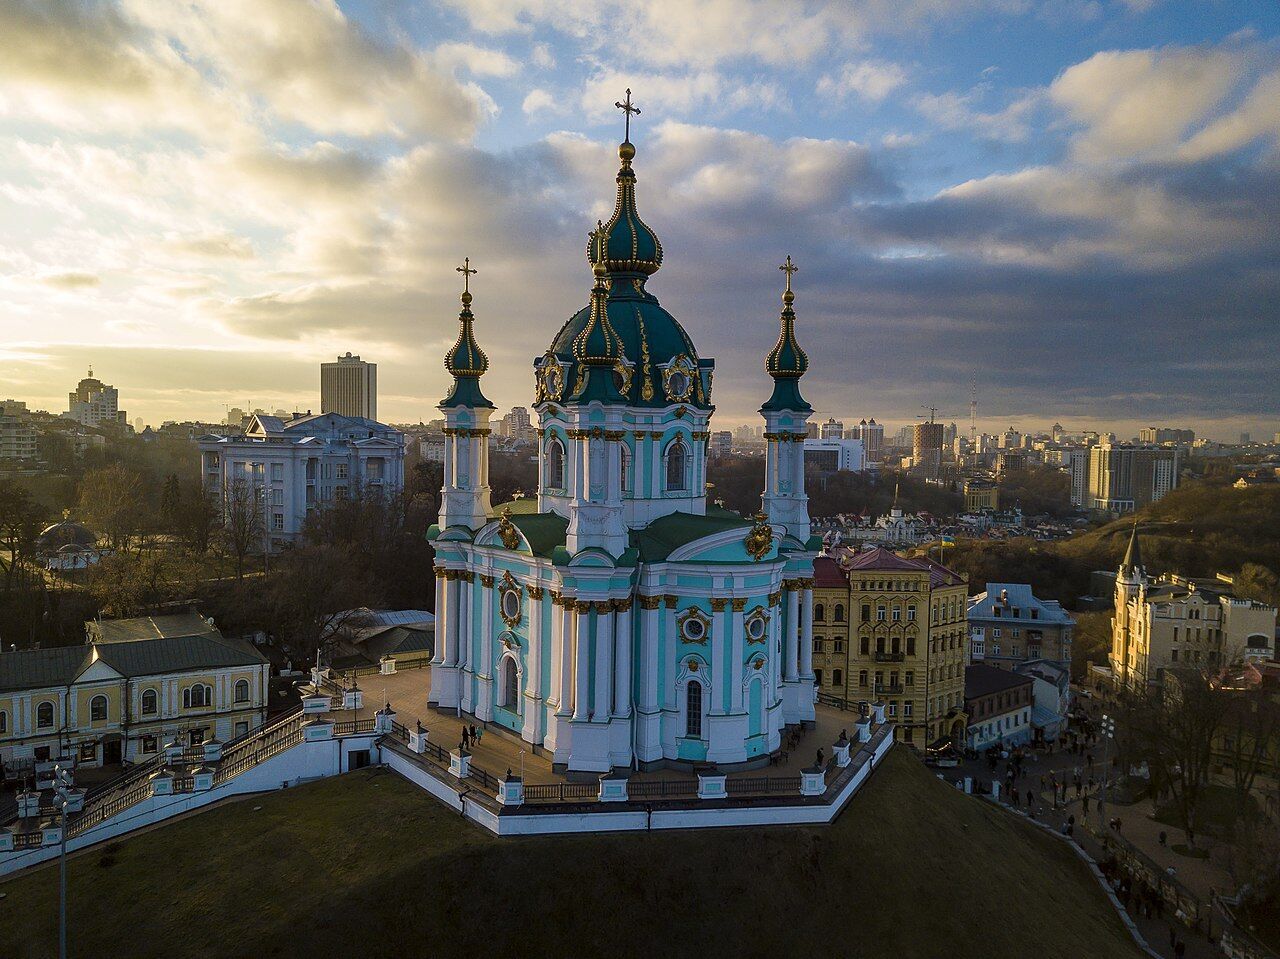 Від 1880-х і до наших днів: Андріївська церква в Києві в різні часи. Фото